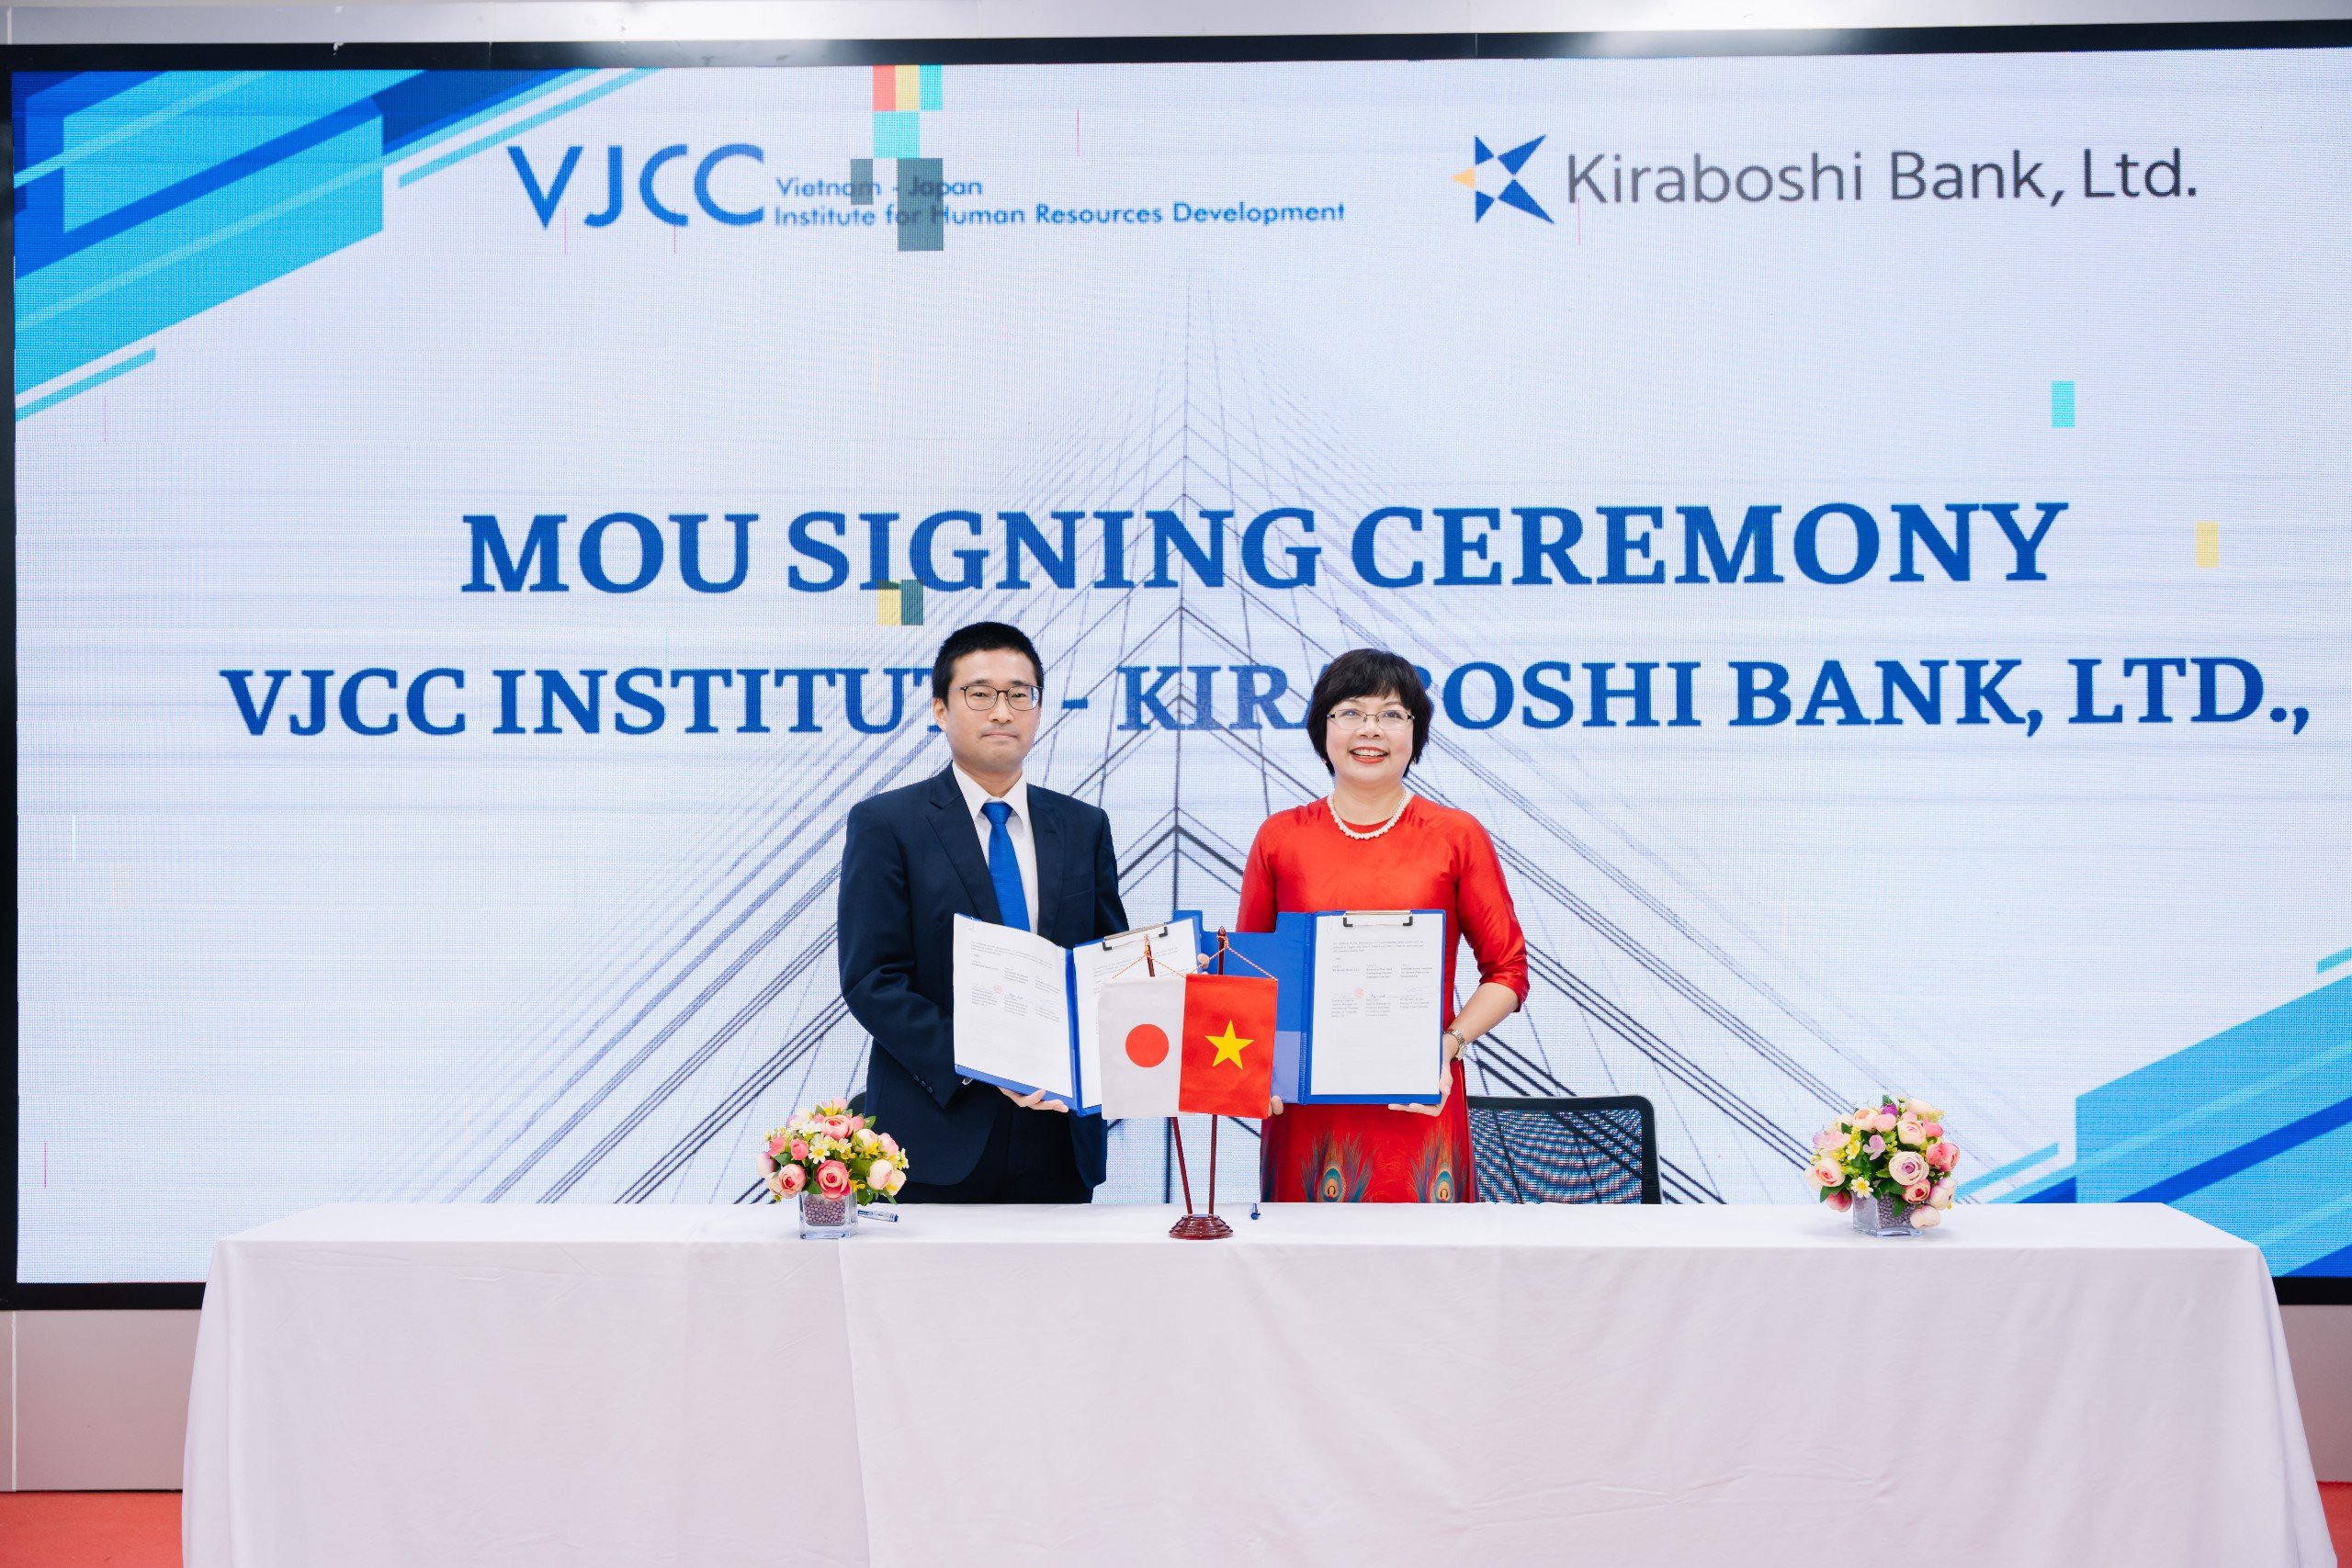 株式会社きらぼし銀行、きらぼしビジネスコンサルティングベトナムとの協力覚書を締結しました